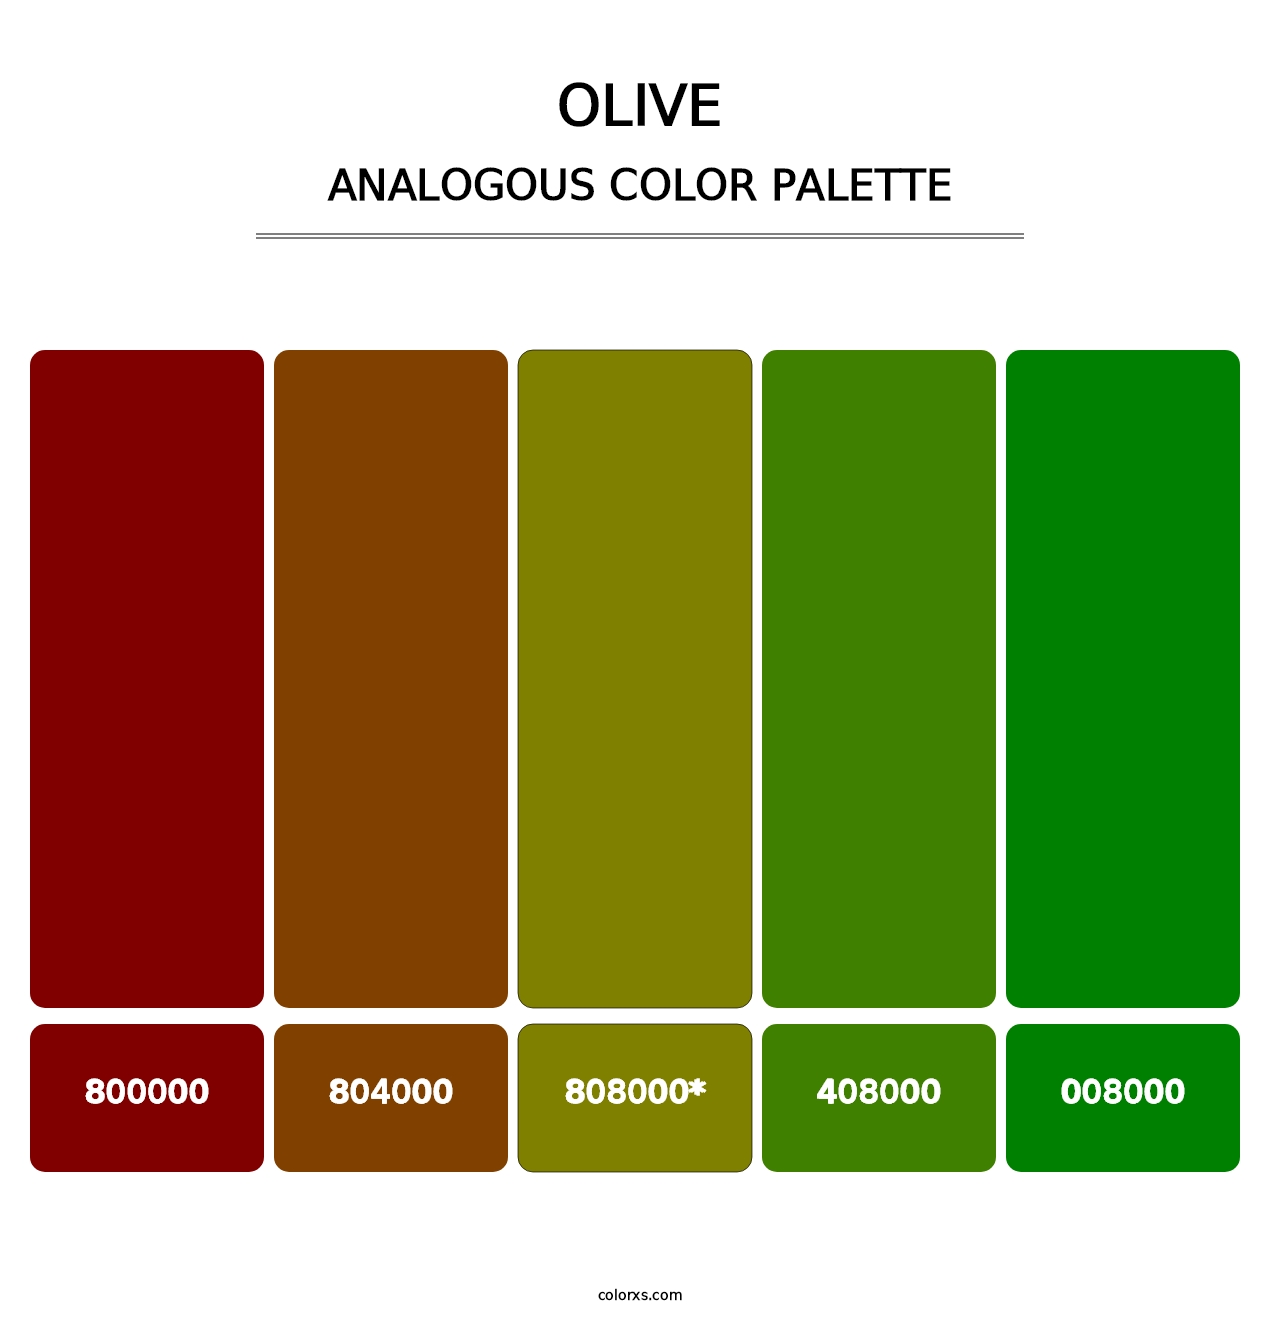 Olive - Analogous Color Palette